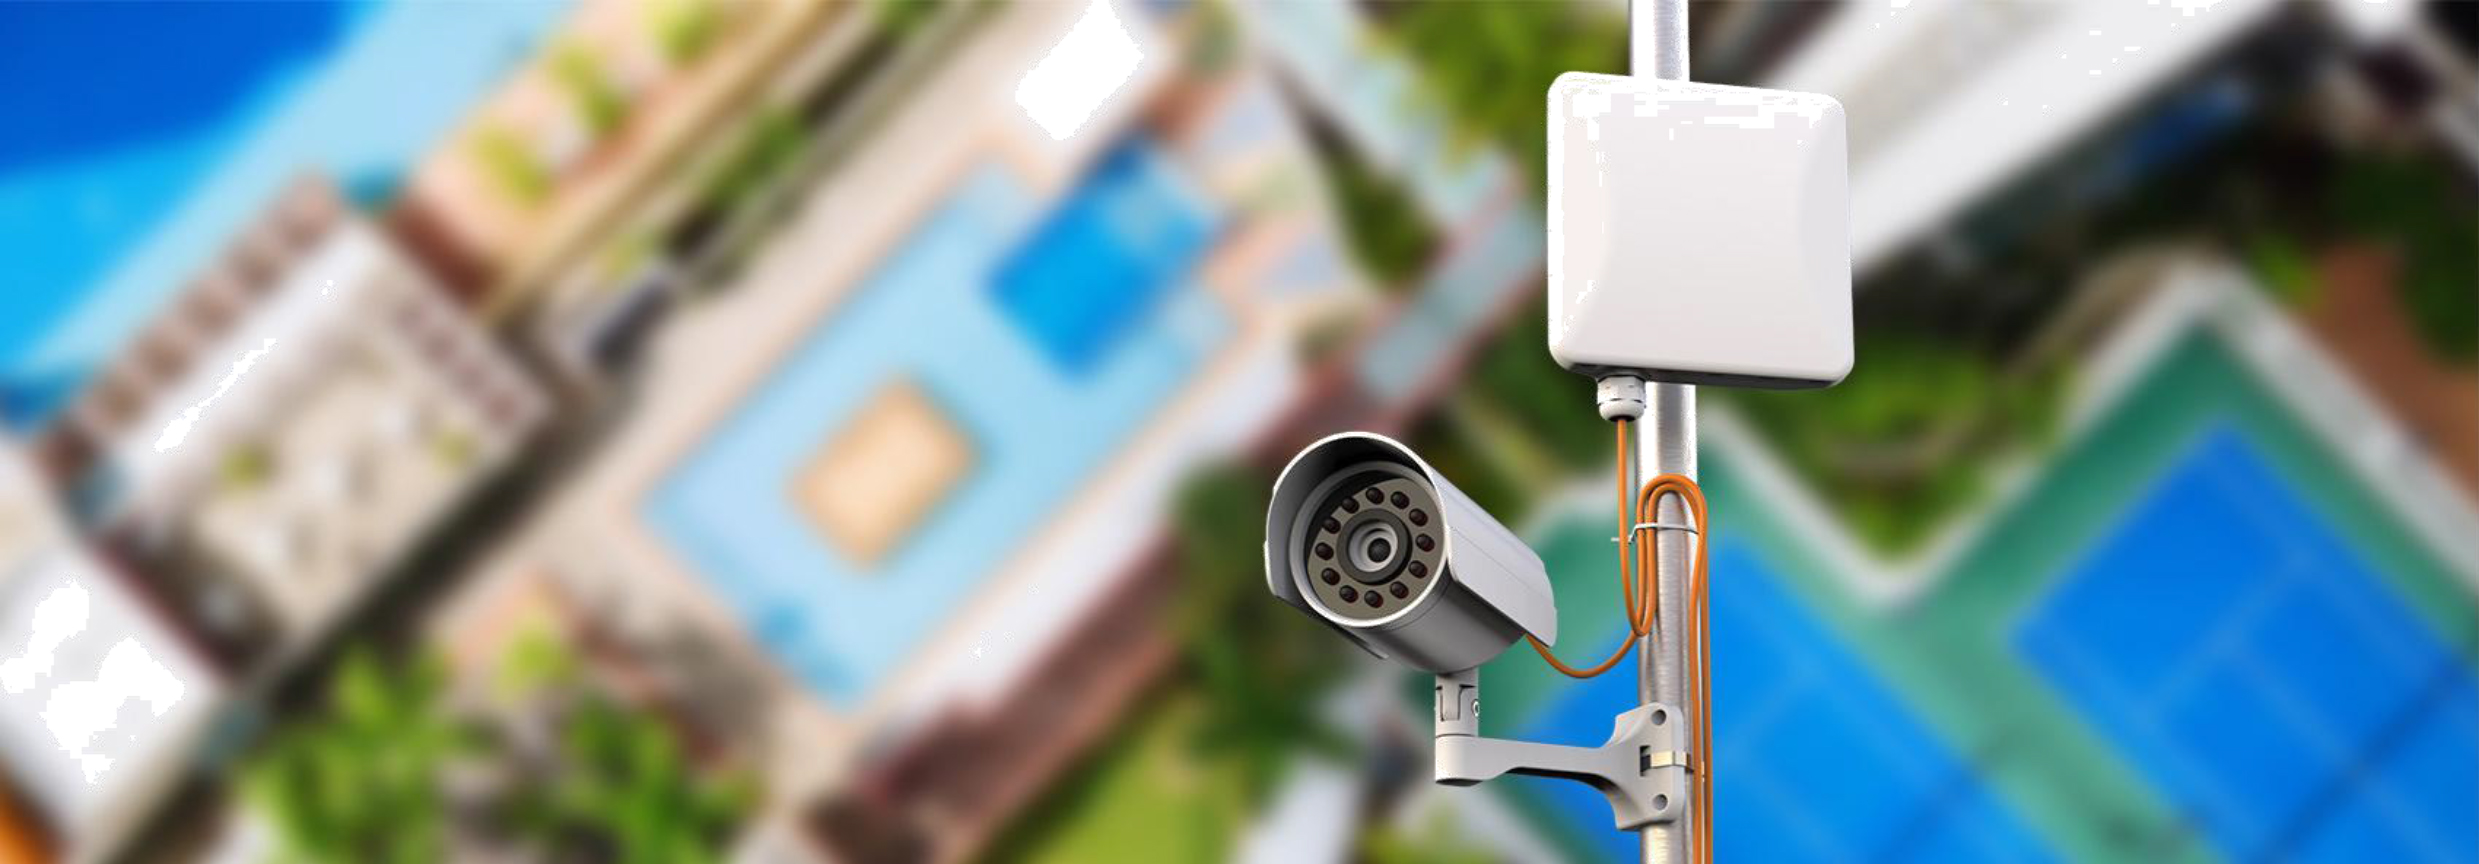 LigoWave - Giải pháp wifi chuyên dụng cho chuyền dẫn ngoài trời (CCTV)